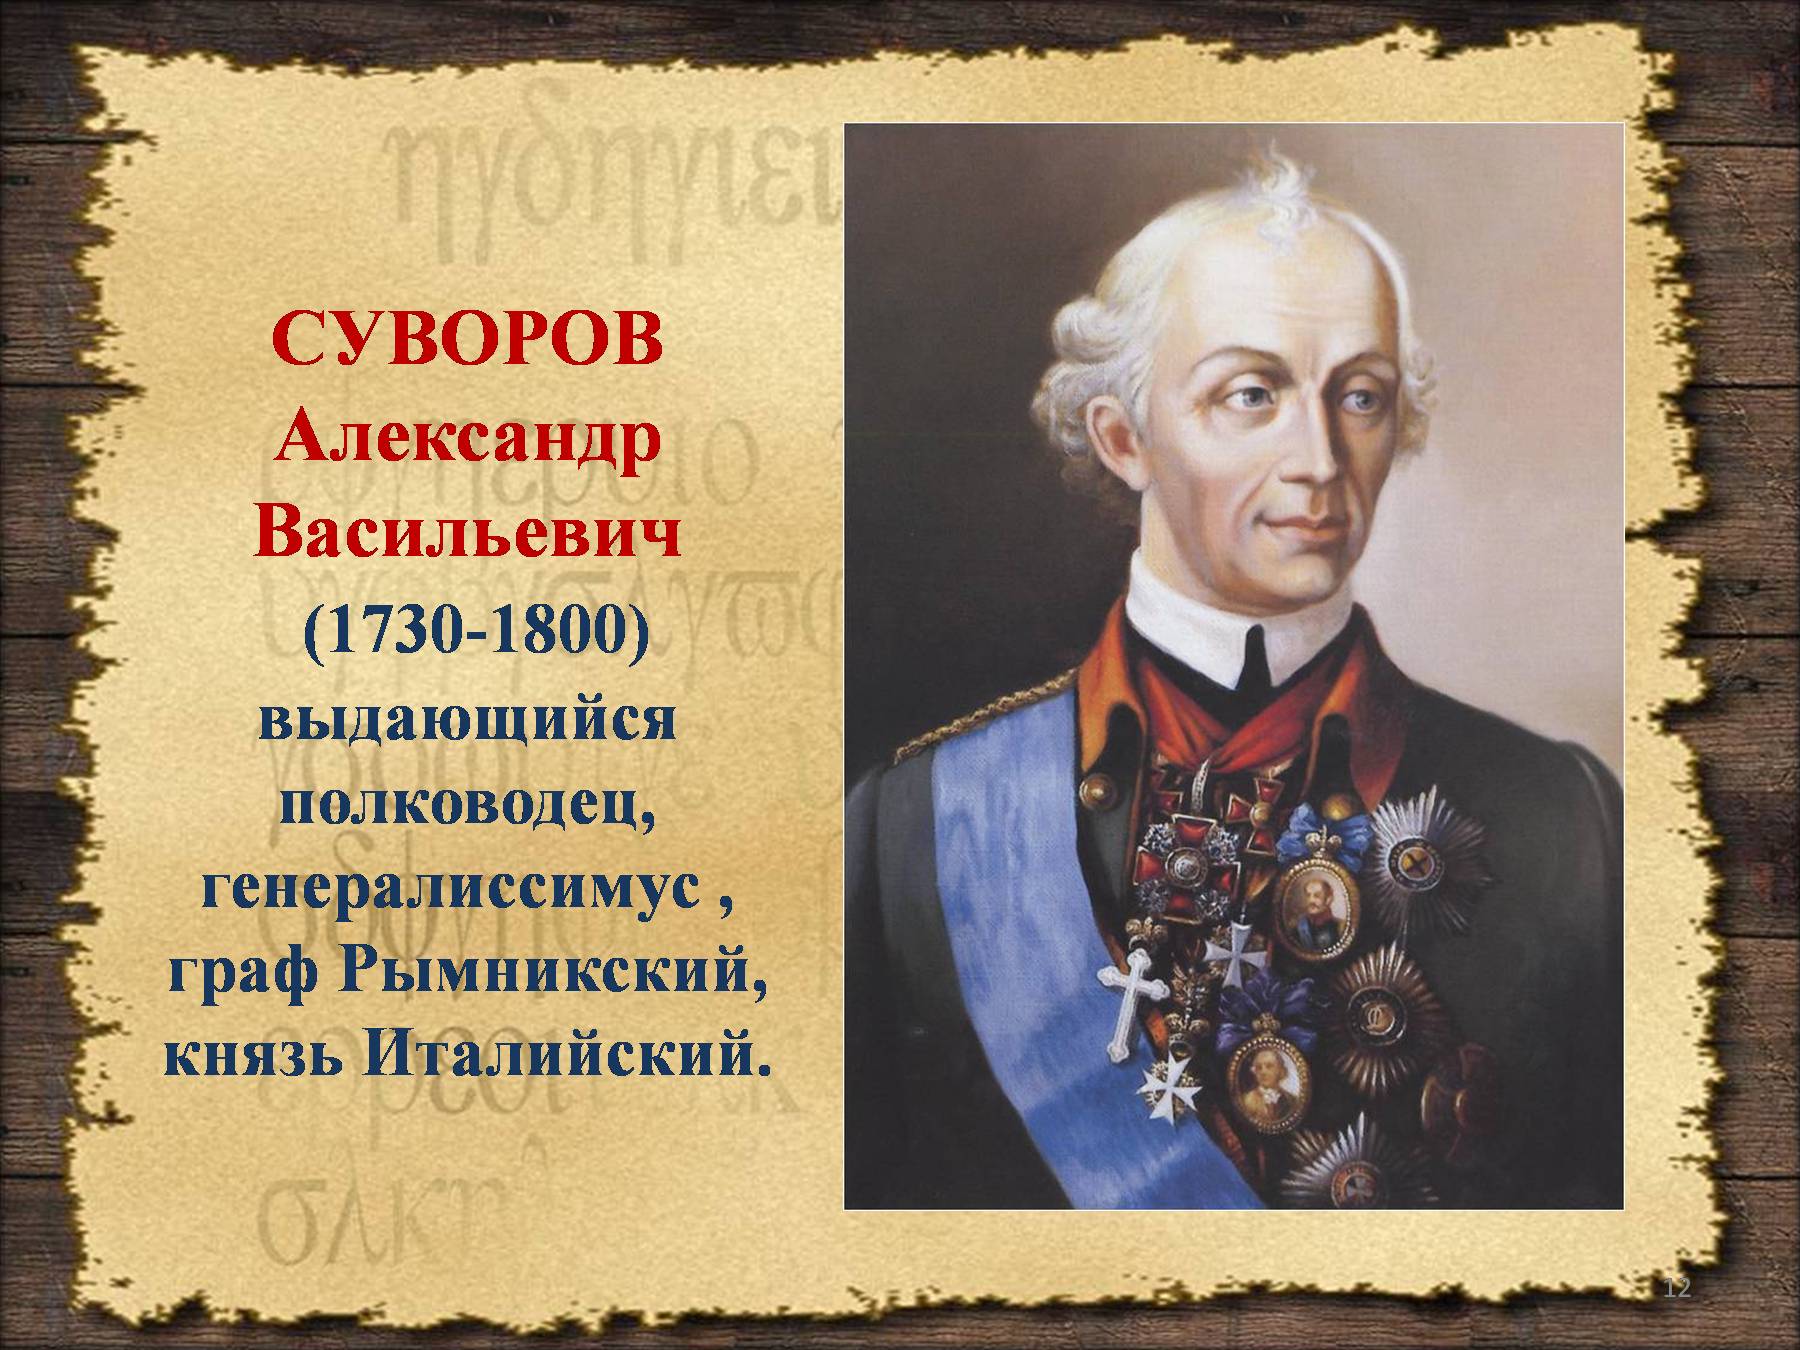 Учительница попросила назвать имена известных российских полководцев. Великие полководцы России Суворов.